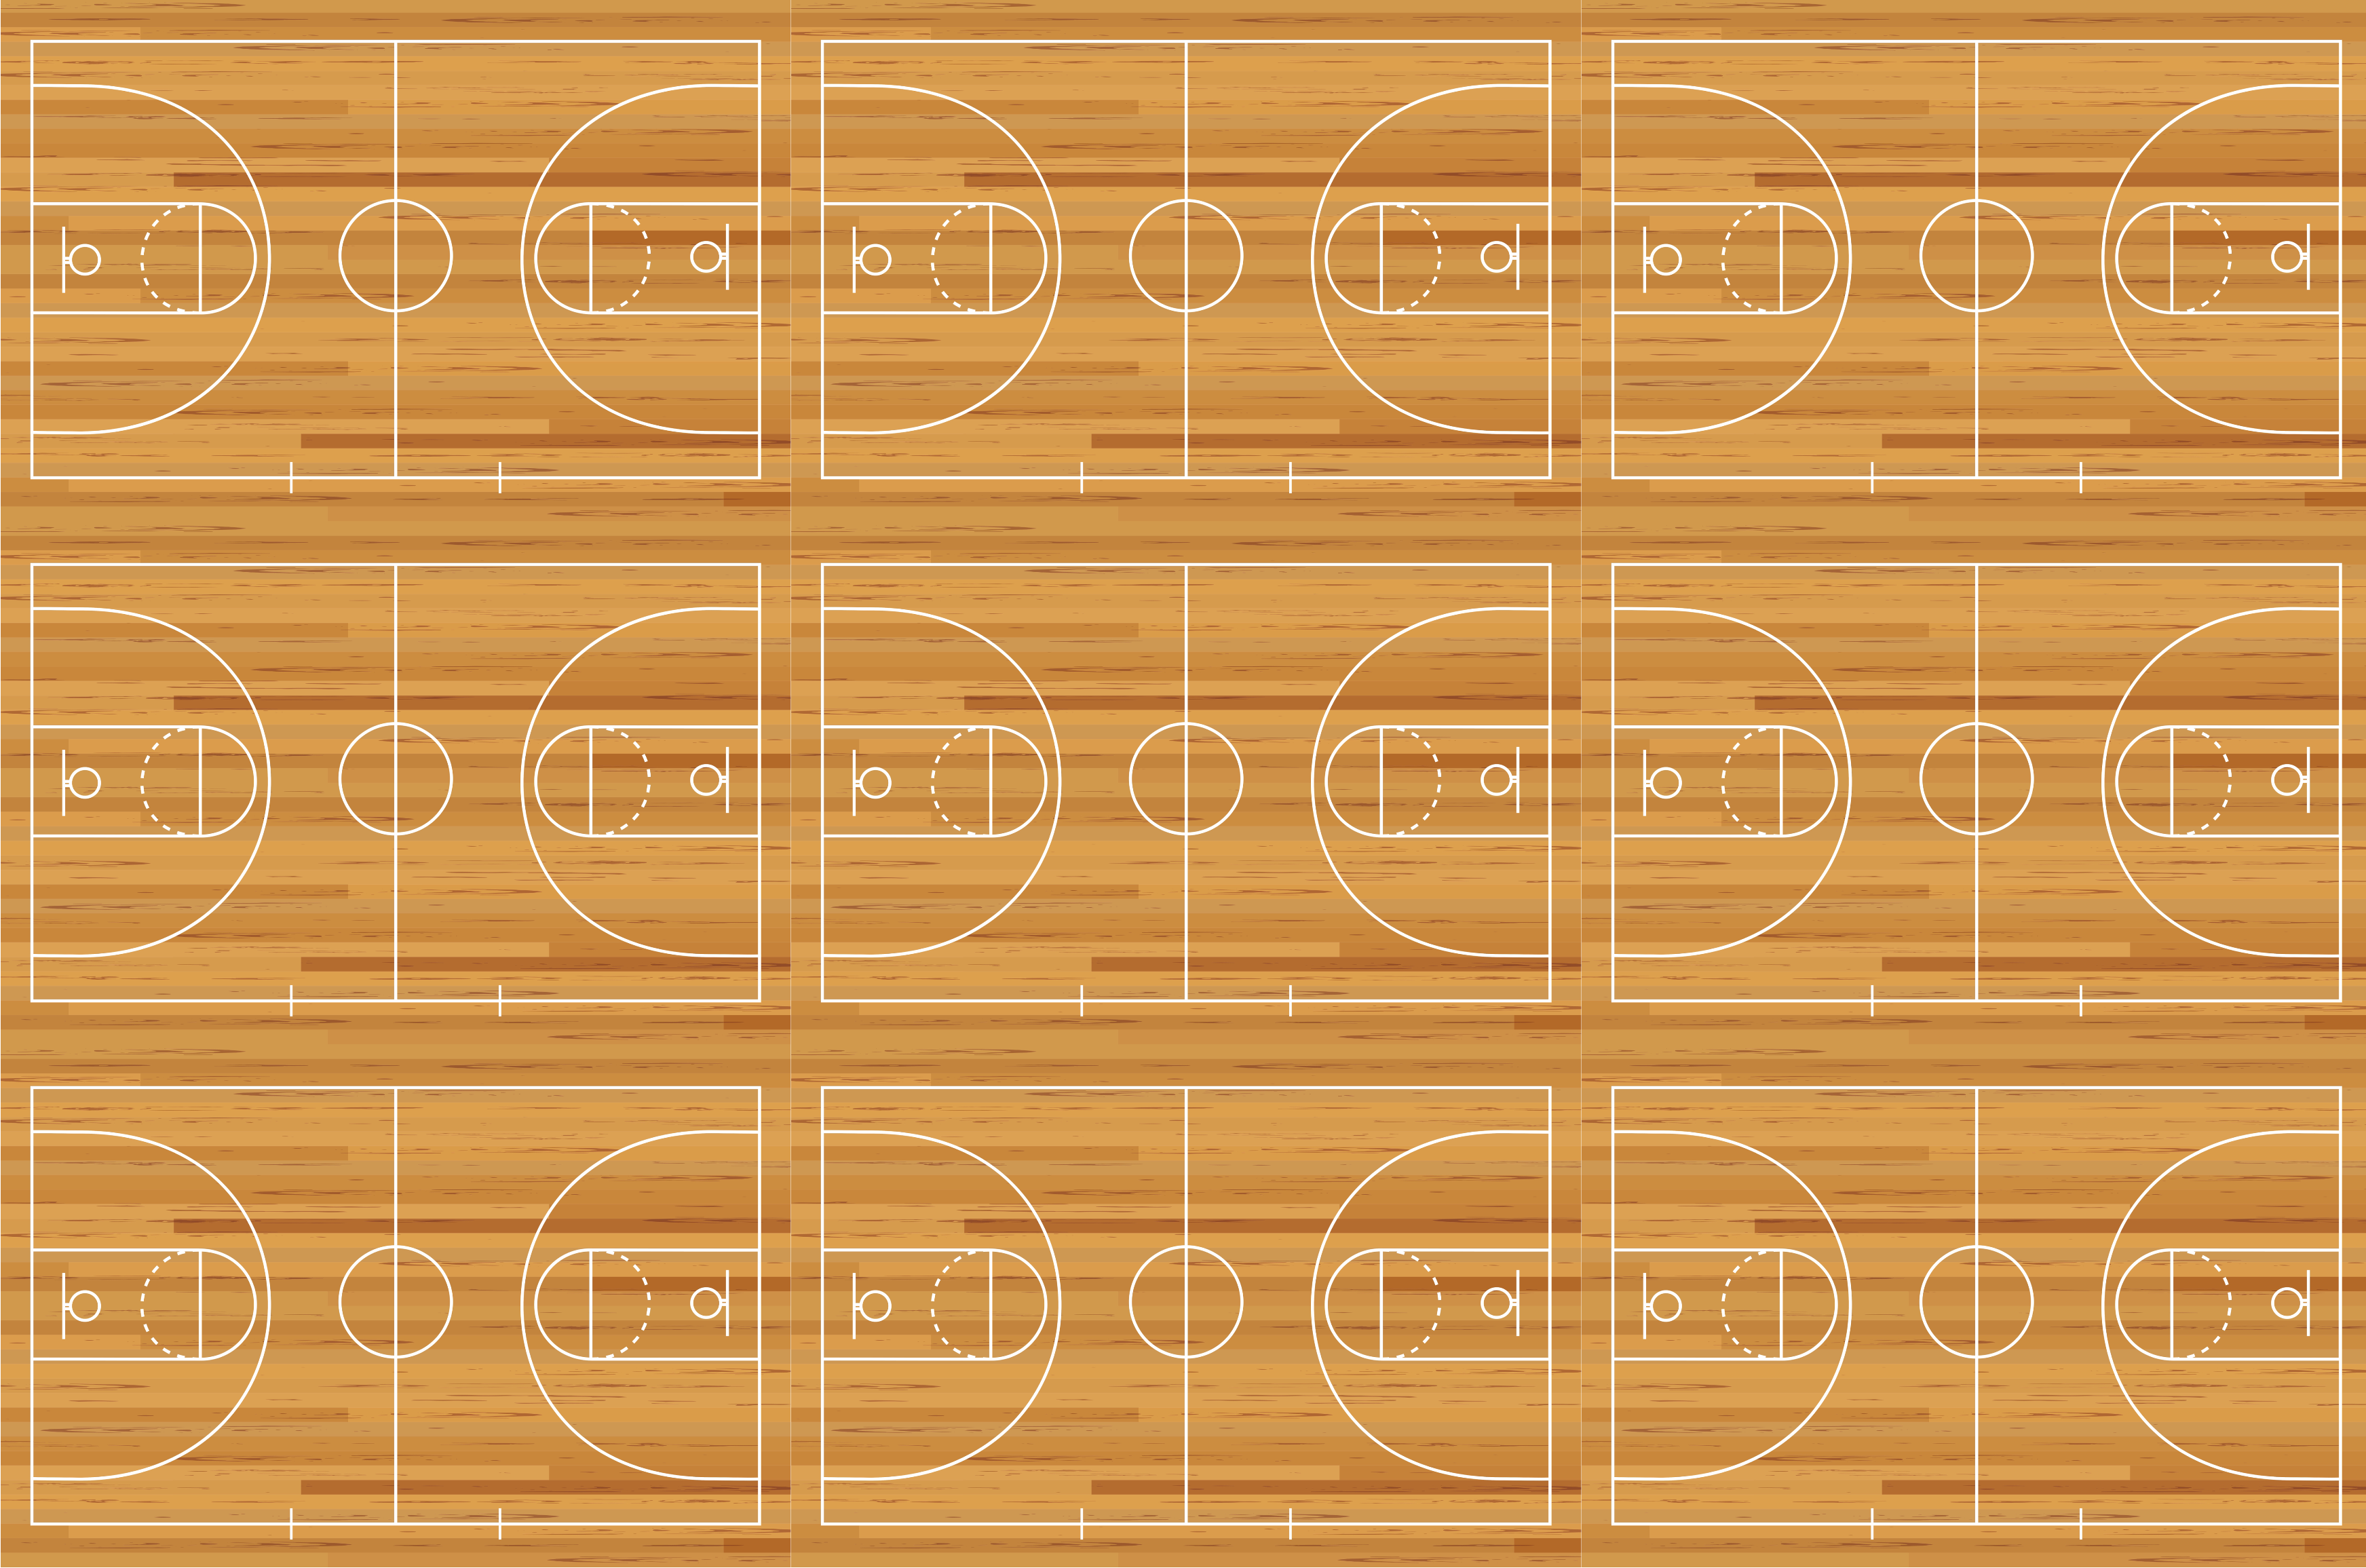 nine basketball courts